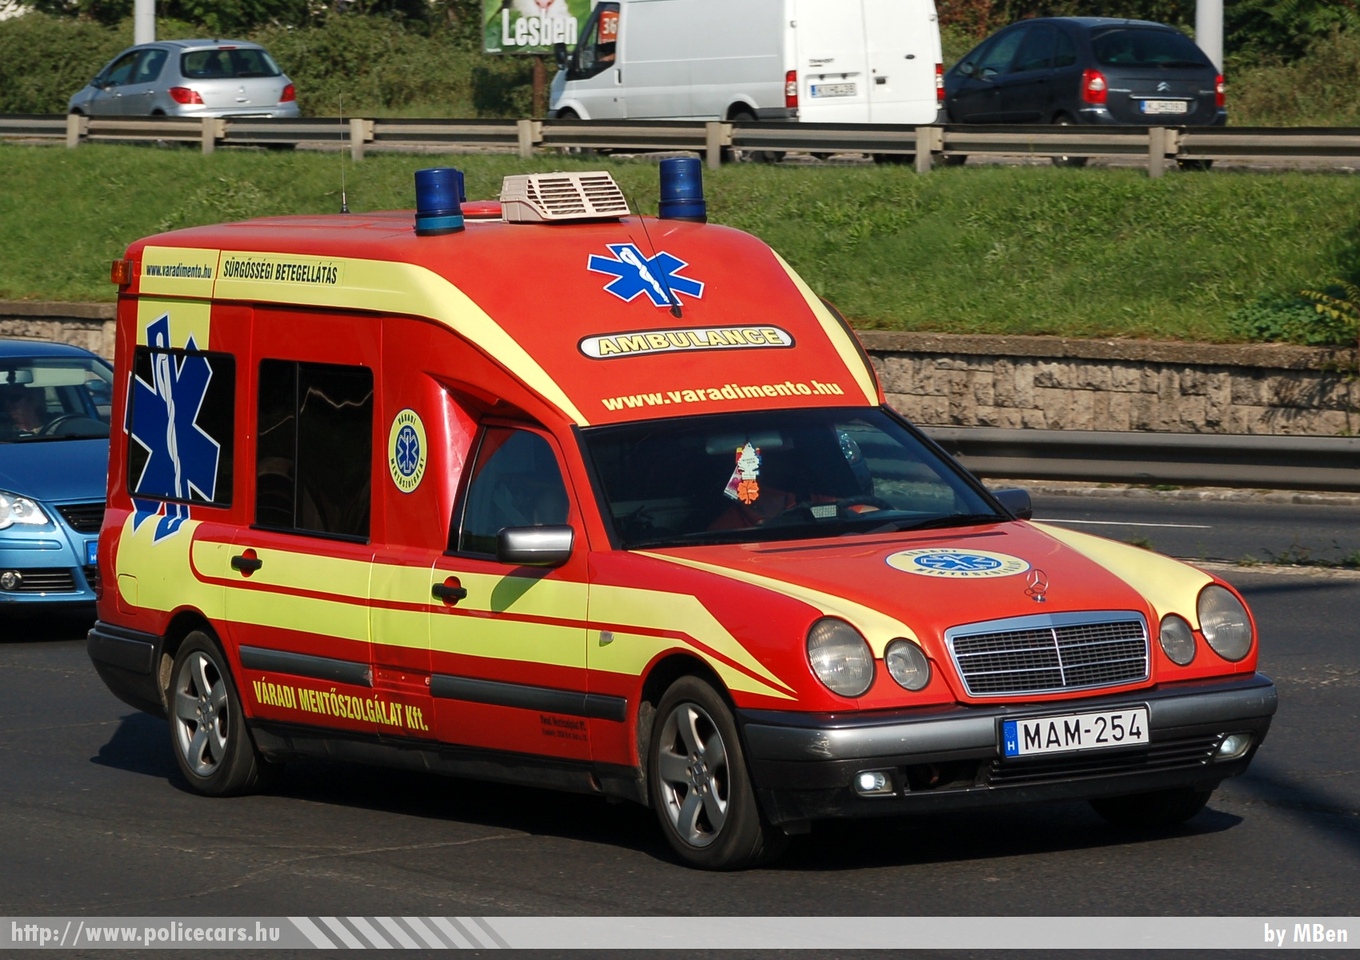 Mercedes-Benz E Binz, Váradi Mentõszolgálat Kft., fotó: MBen
Keywords: mentő mentőautó magyar Magyarország hungarian Hungary ambulance MAM-254